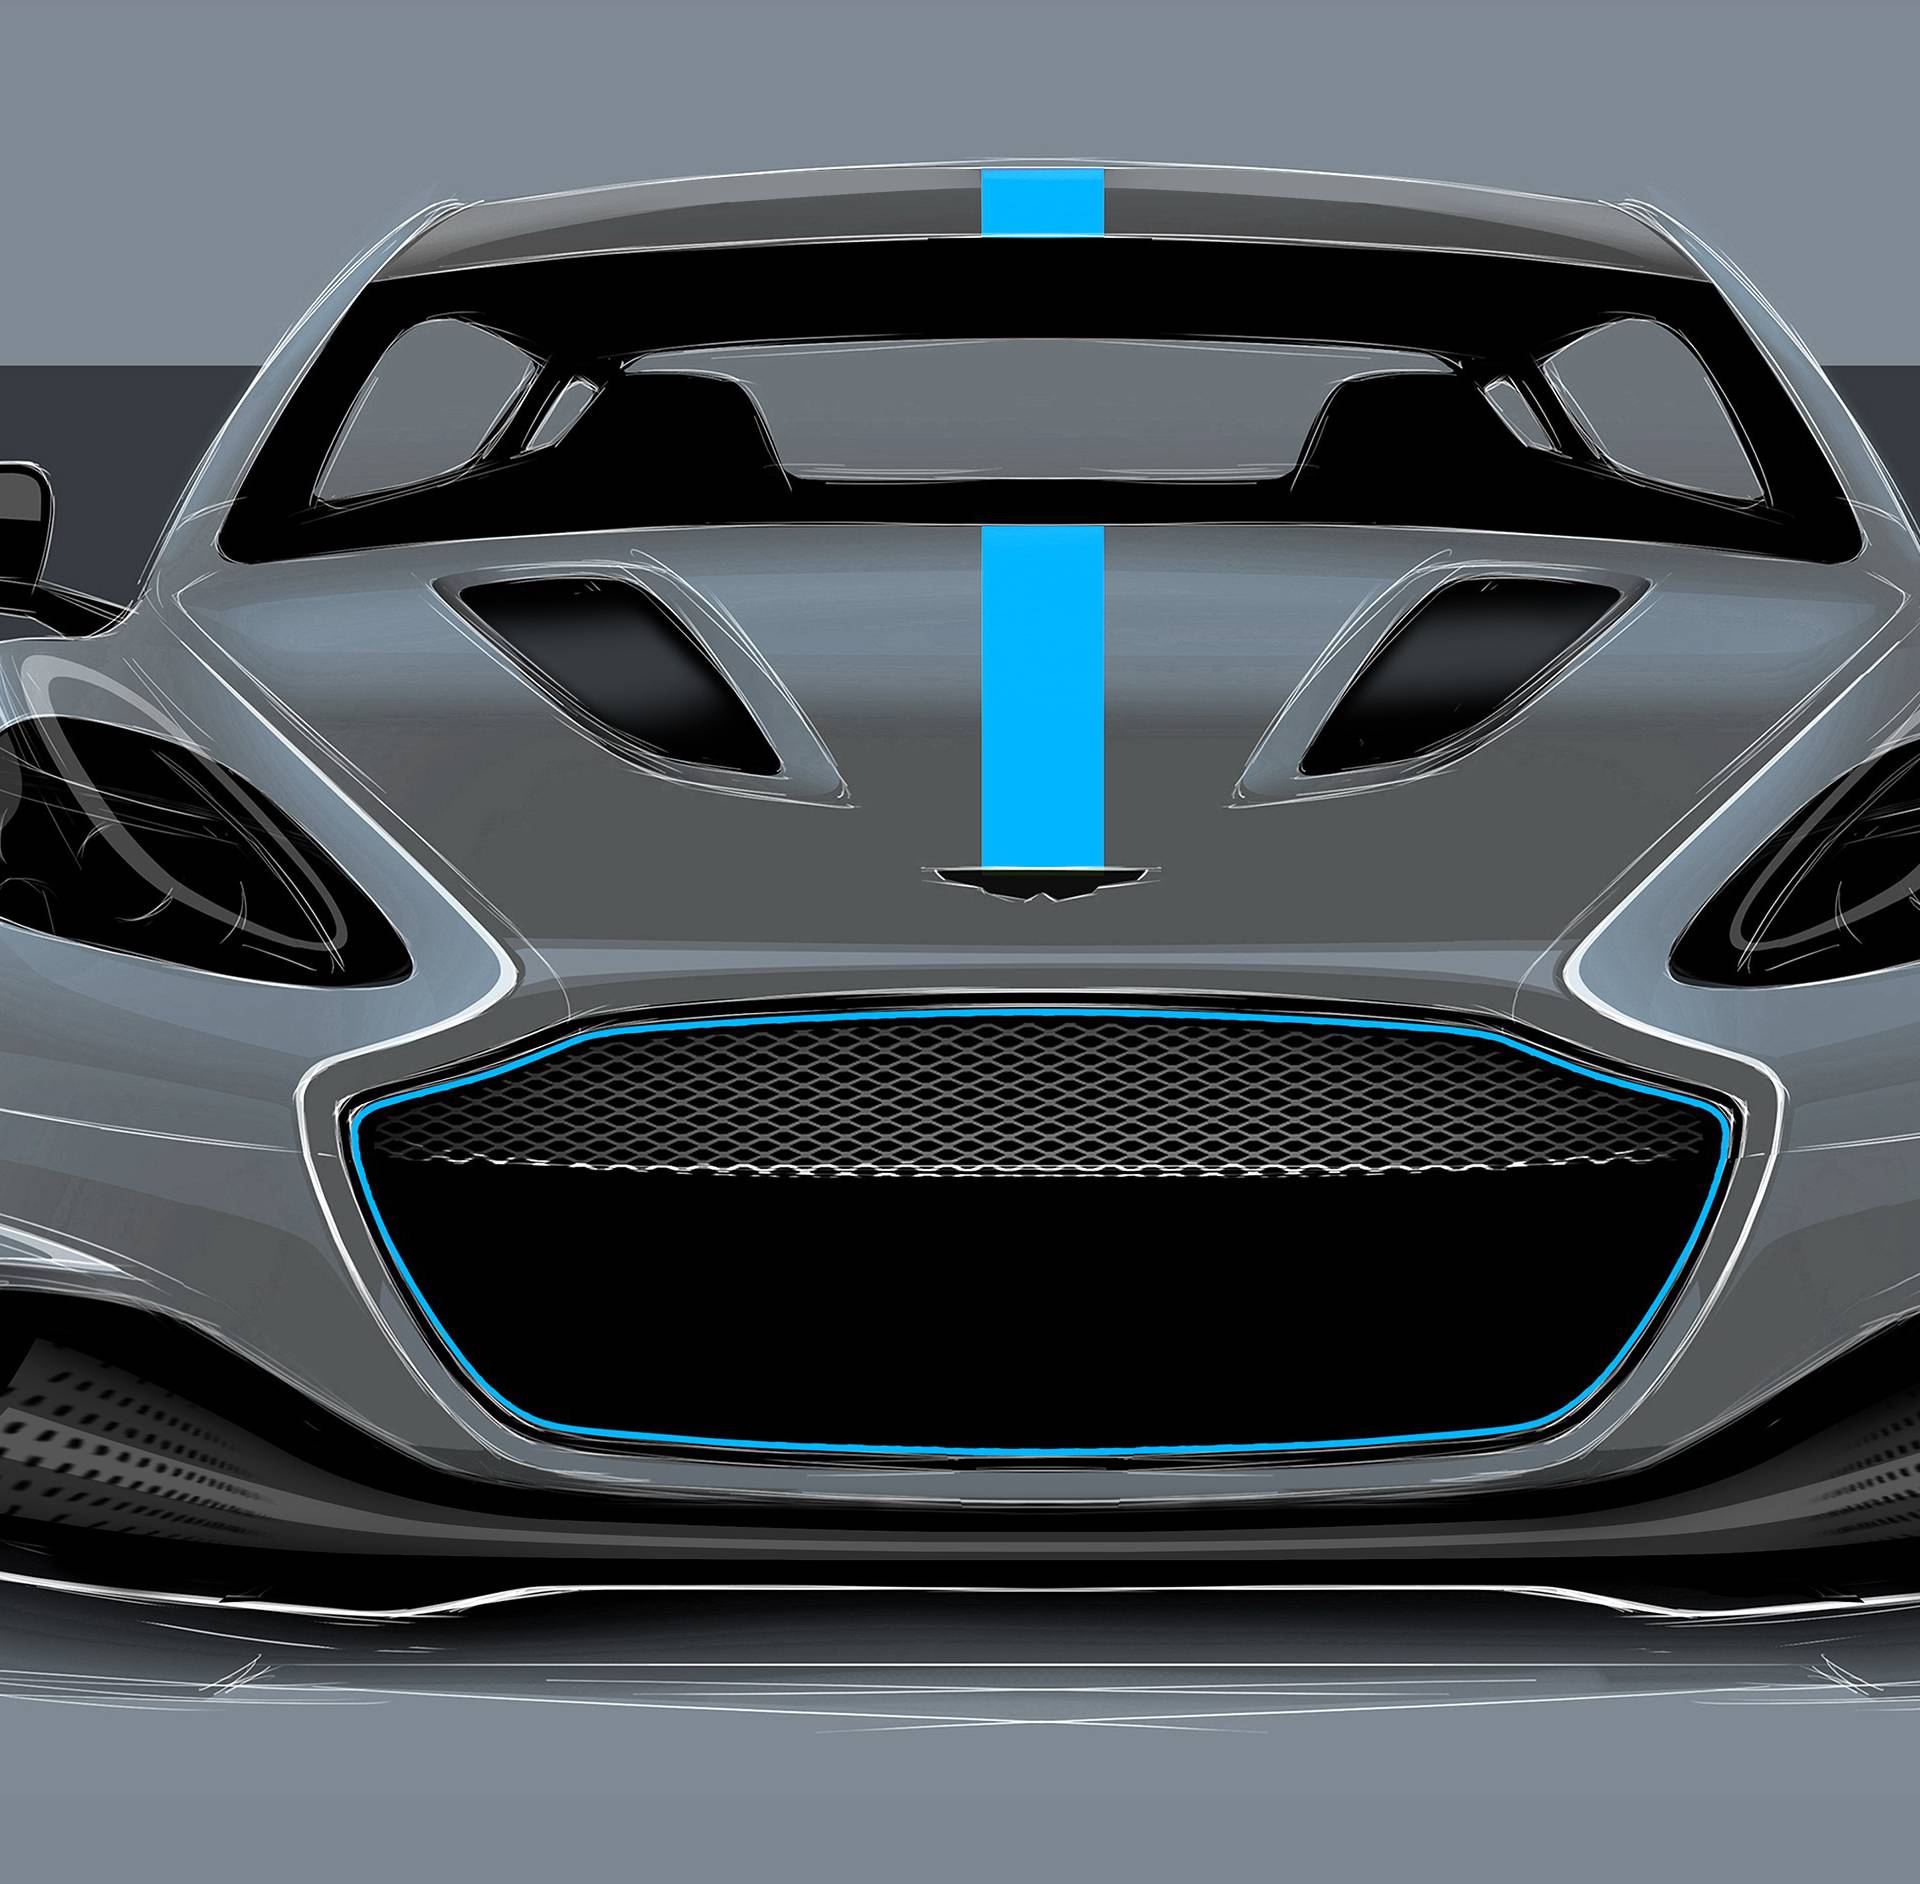 Elektro jurilica za dva milijuna kuna: Dolazi novi Aston Martin